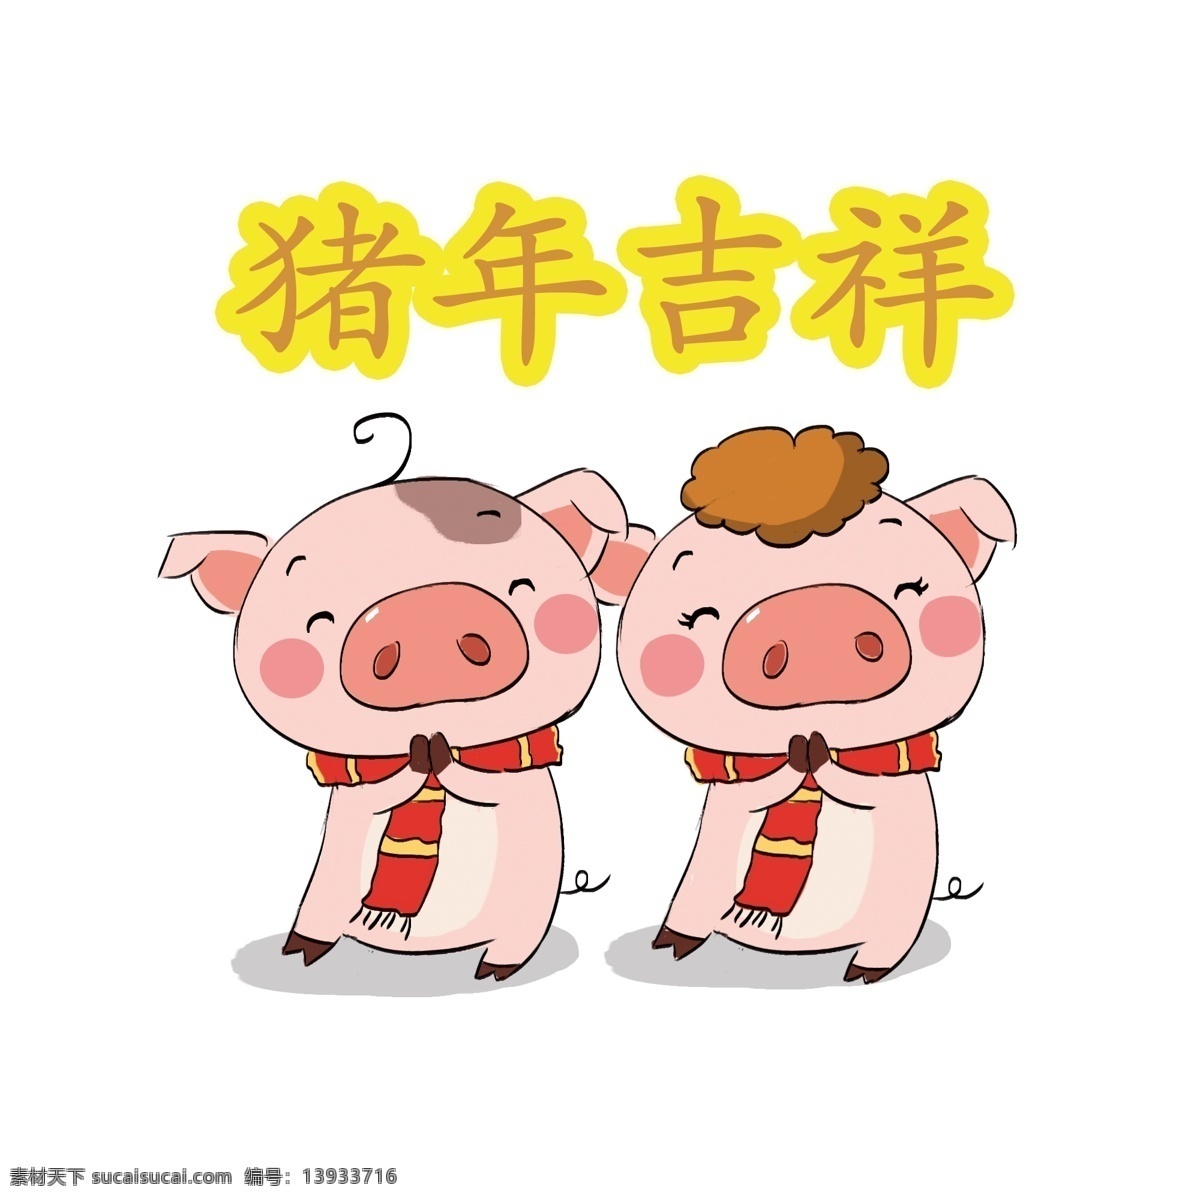 2019 猪年 卡通 手绘 q 版 猪 事 吉祥 新年 可爱 两只猪 拜年 猪事吉祥 诸事吉祥 新年猪 喜庆 过年 表情 粉色猪